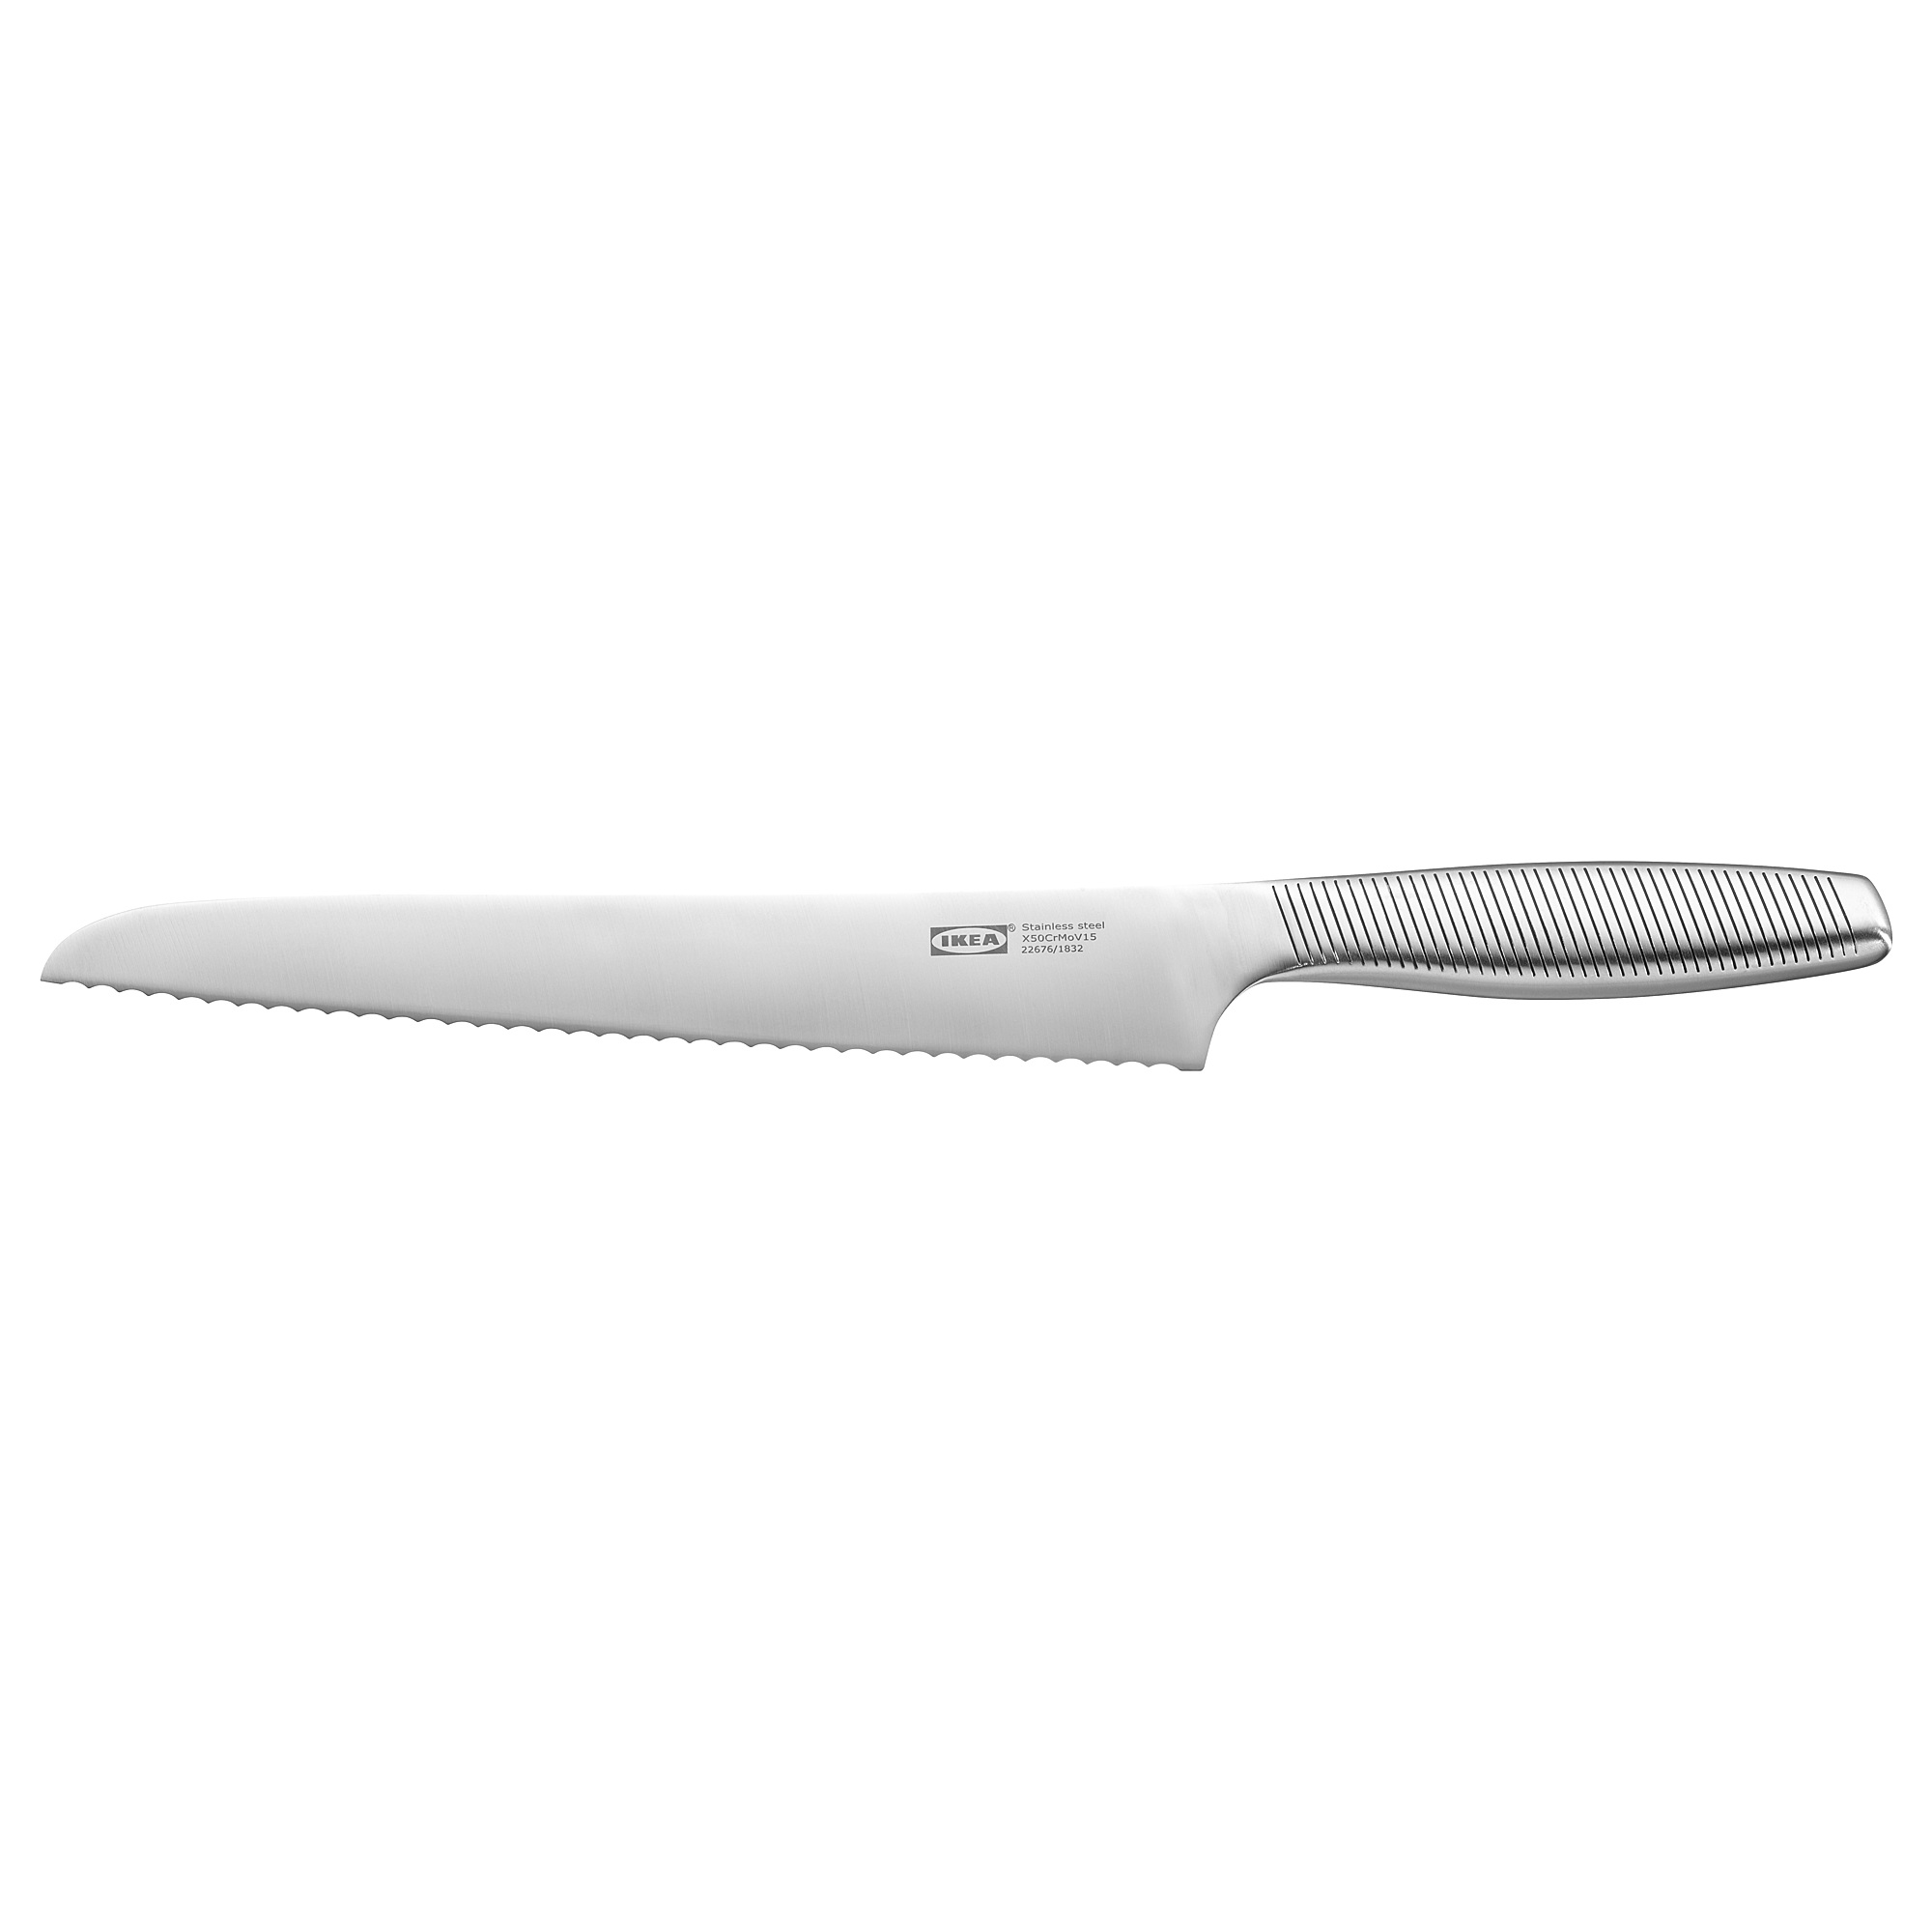 IKEA 365+ bread knife